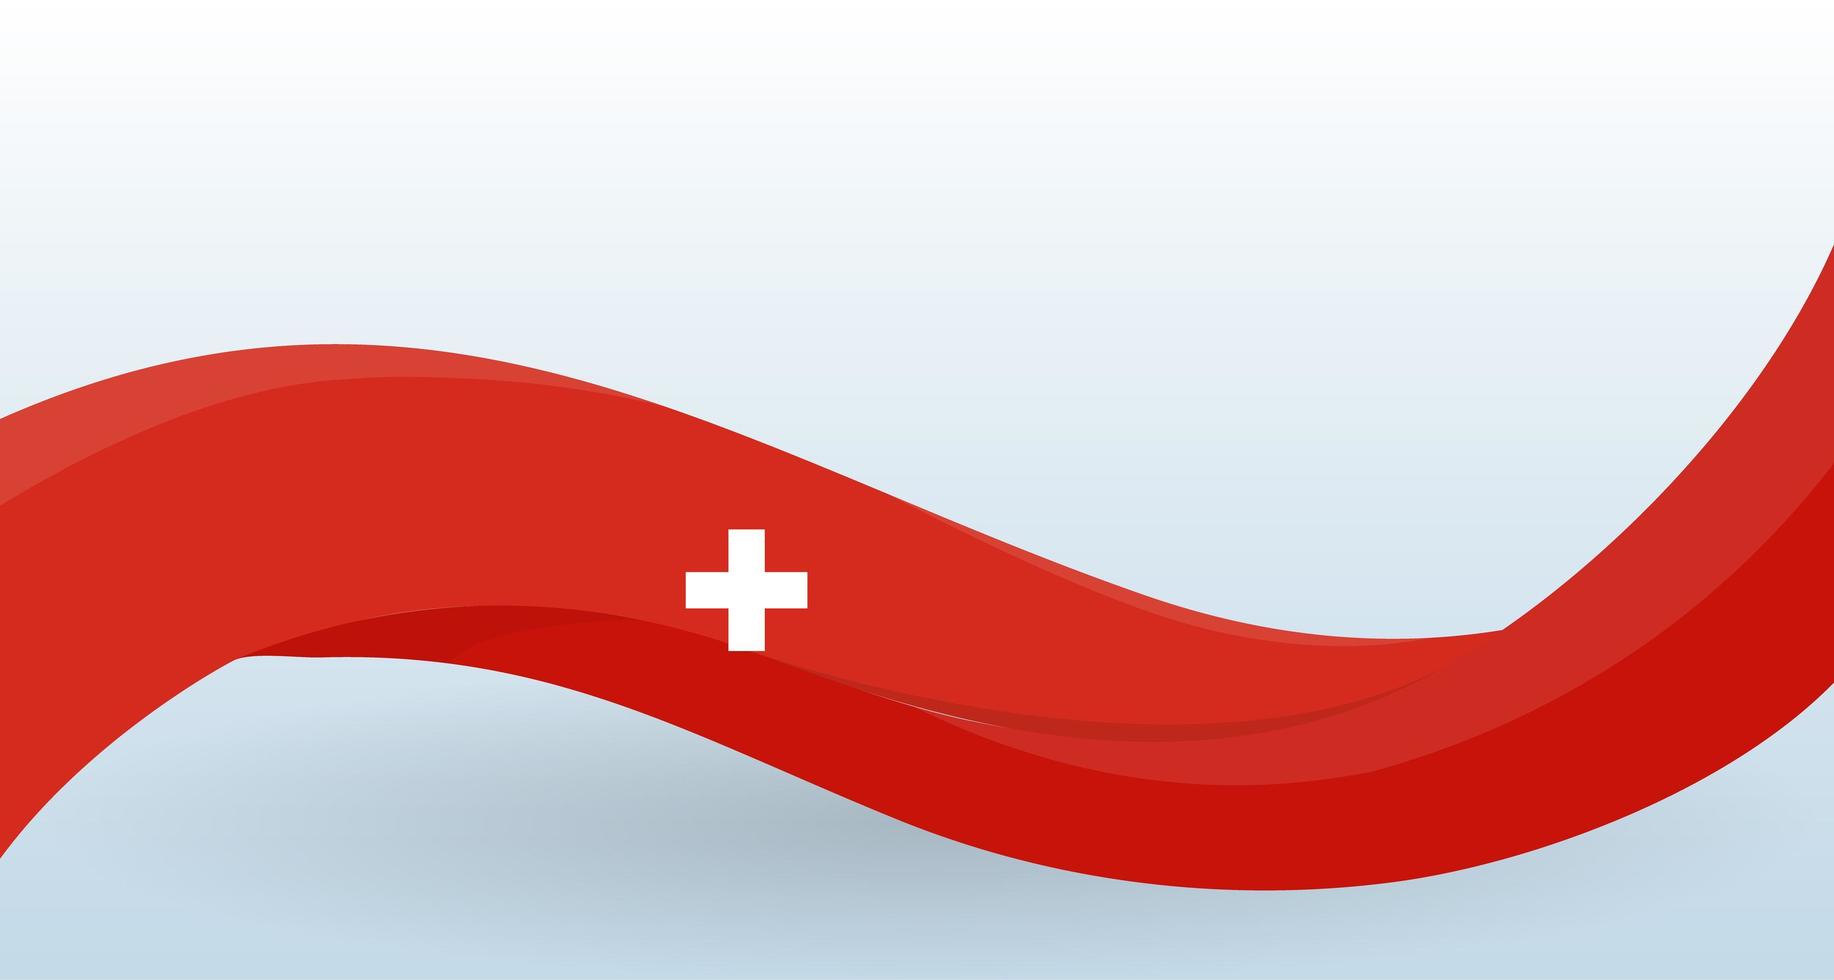 svizzera sventolando bandiera nazionale. forma insolita moderna. modello di progettazione per la decorazione di volantini e biglietti, poster, banner e logo. illustrazione vettoriale isolato.